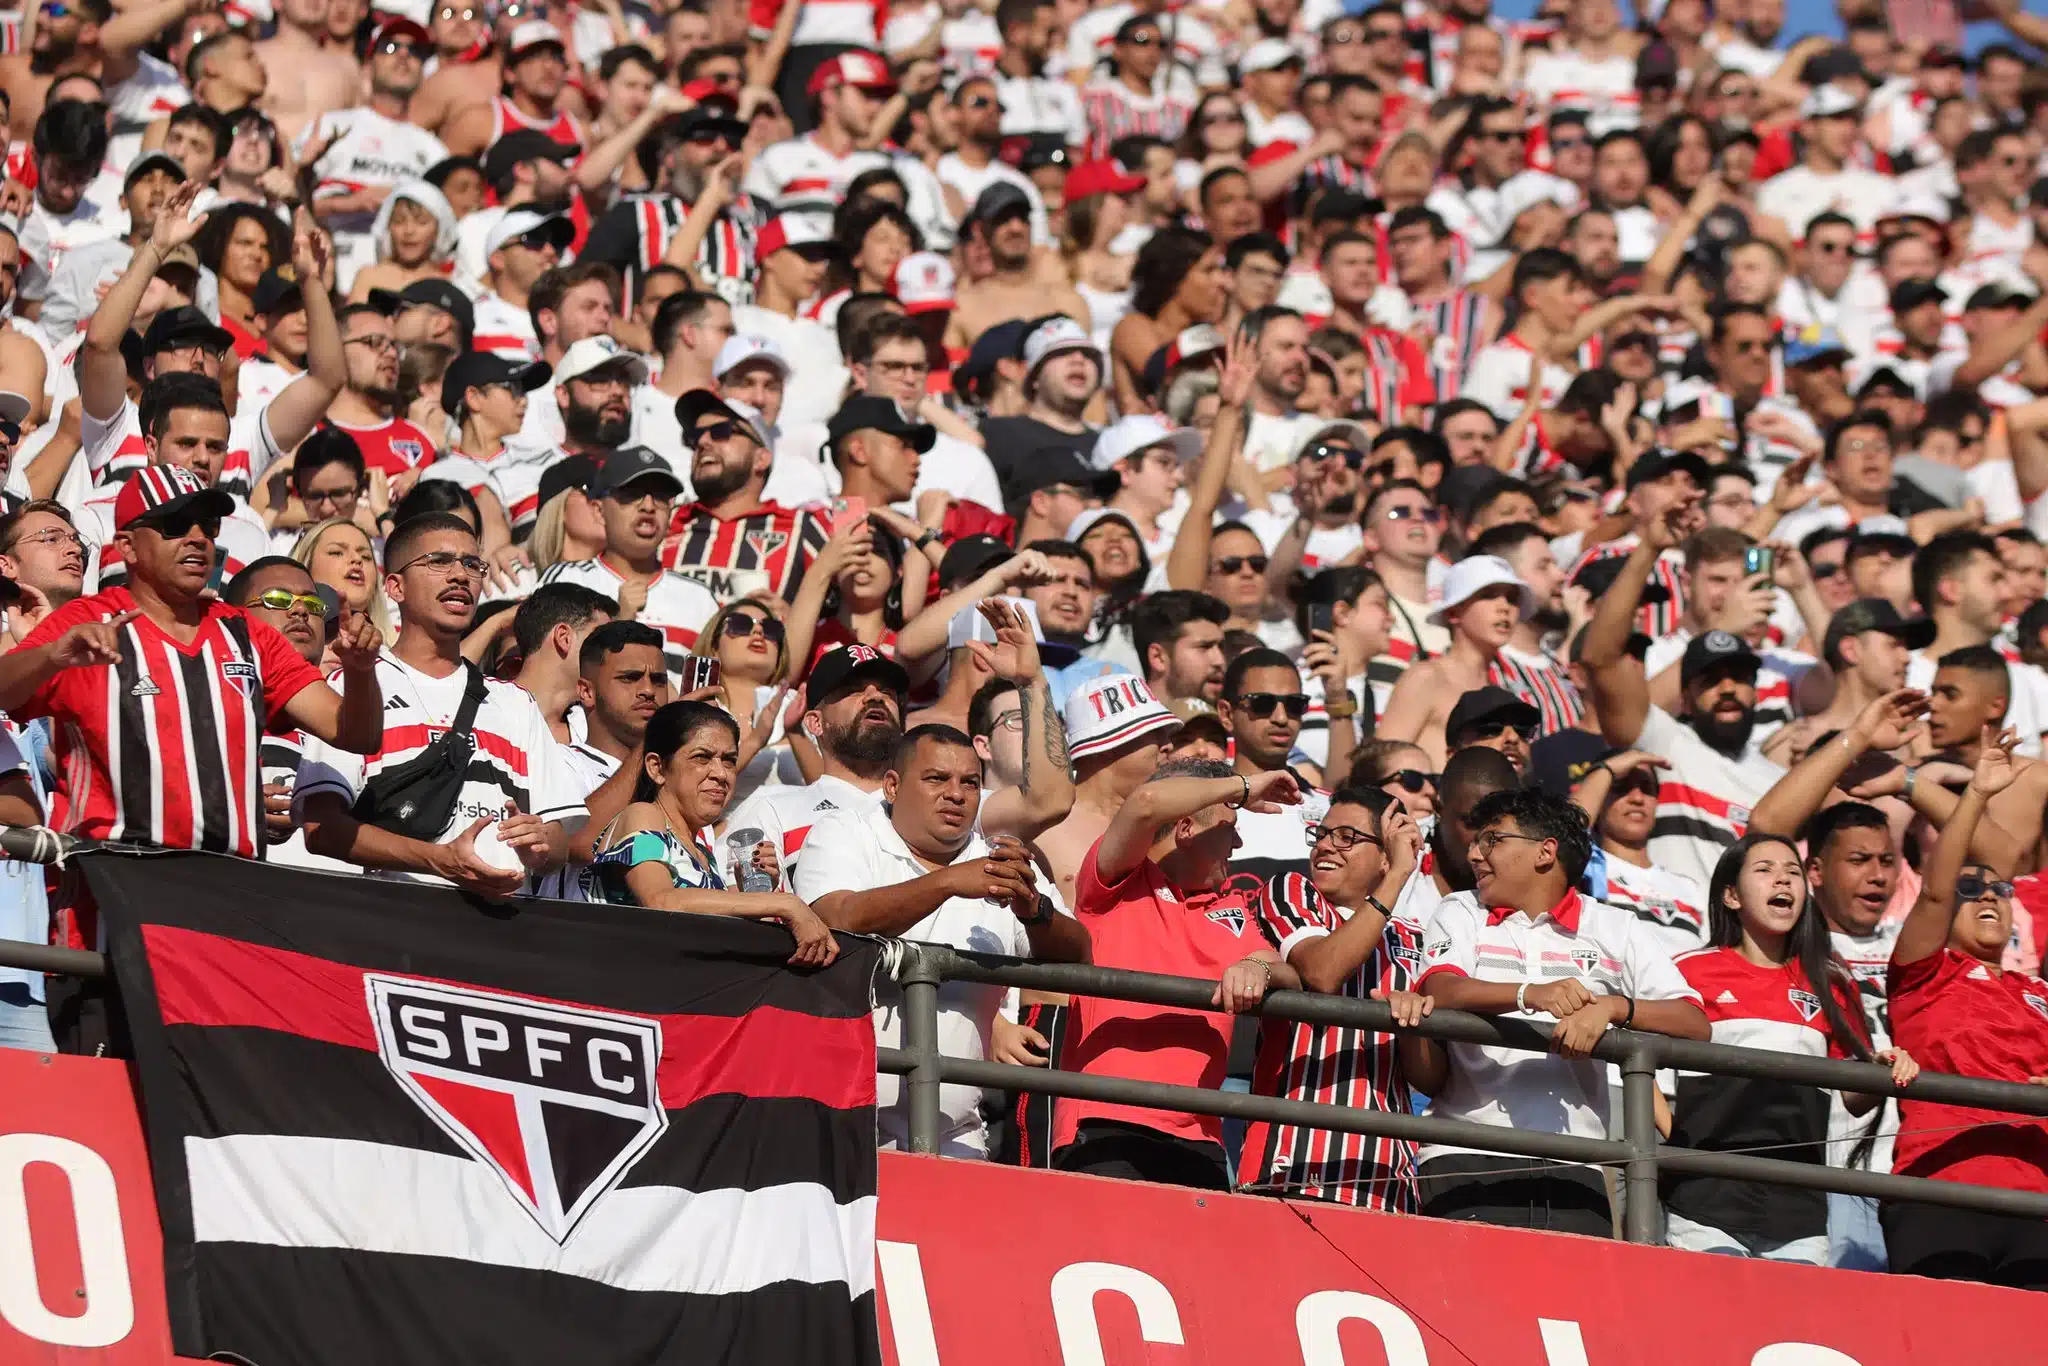 Decisão entre São Paulo x San Lorenzo tem arquibancadas quase esgotadas